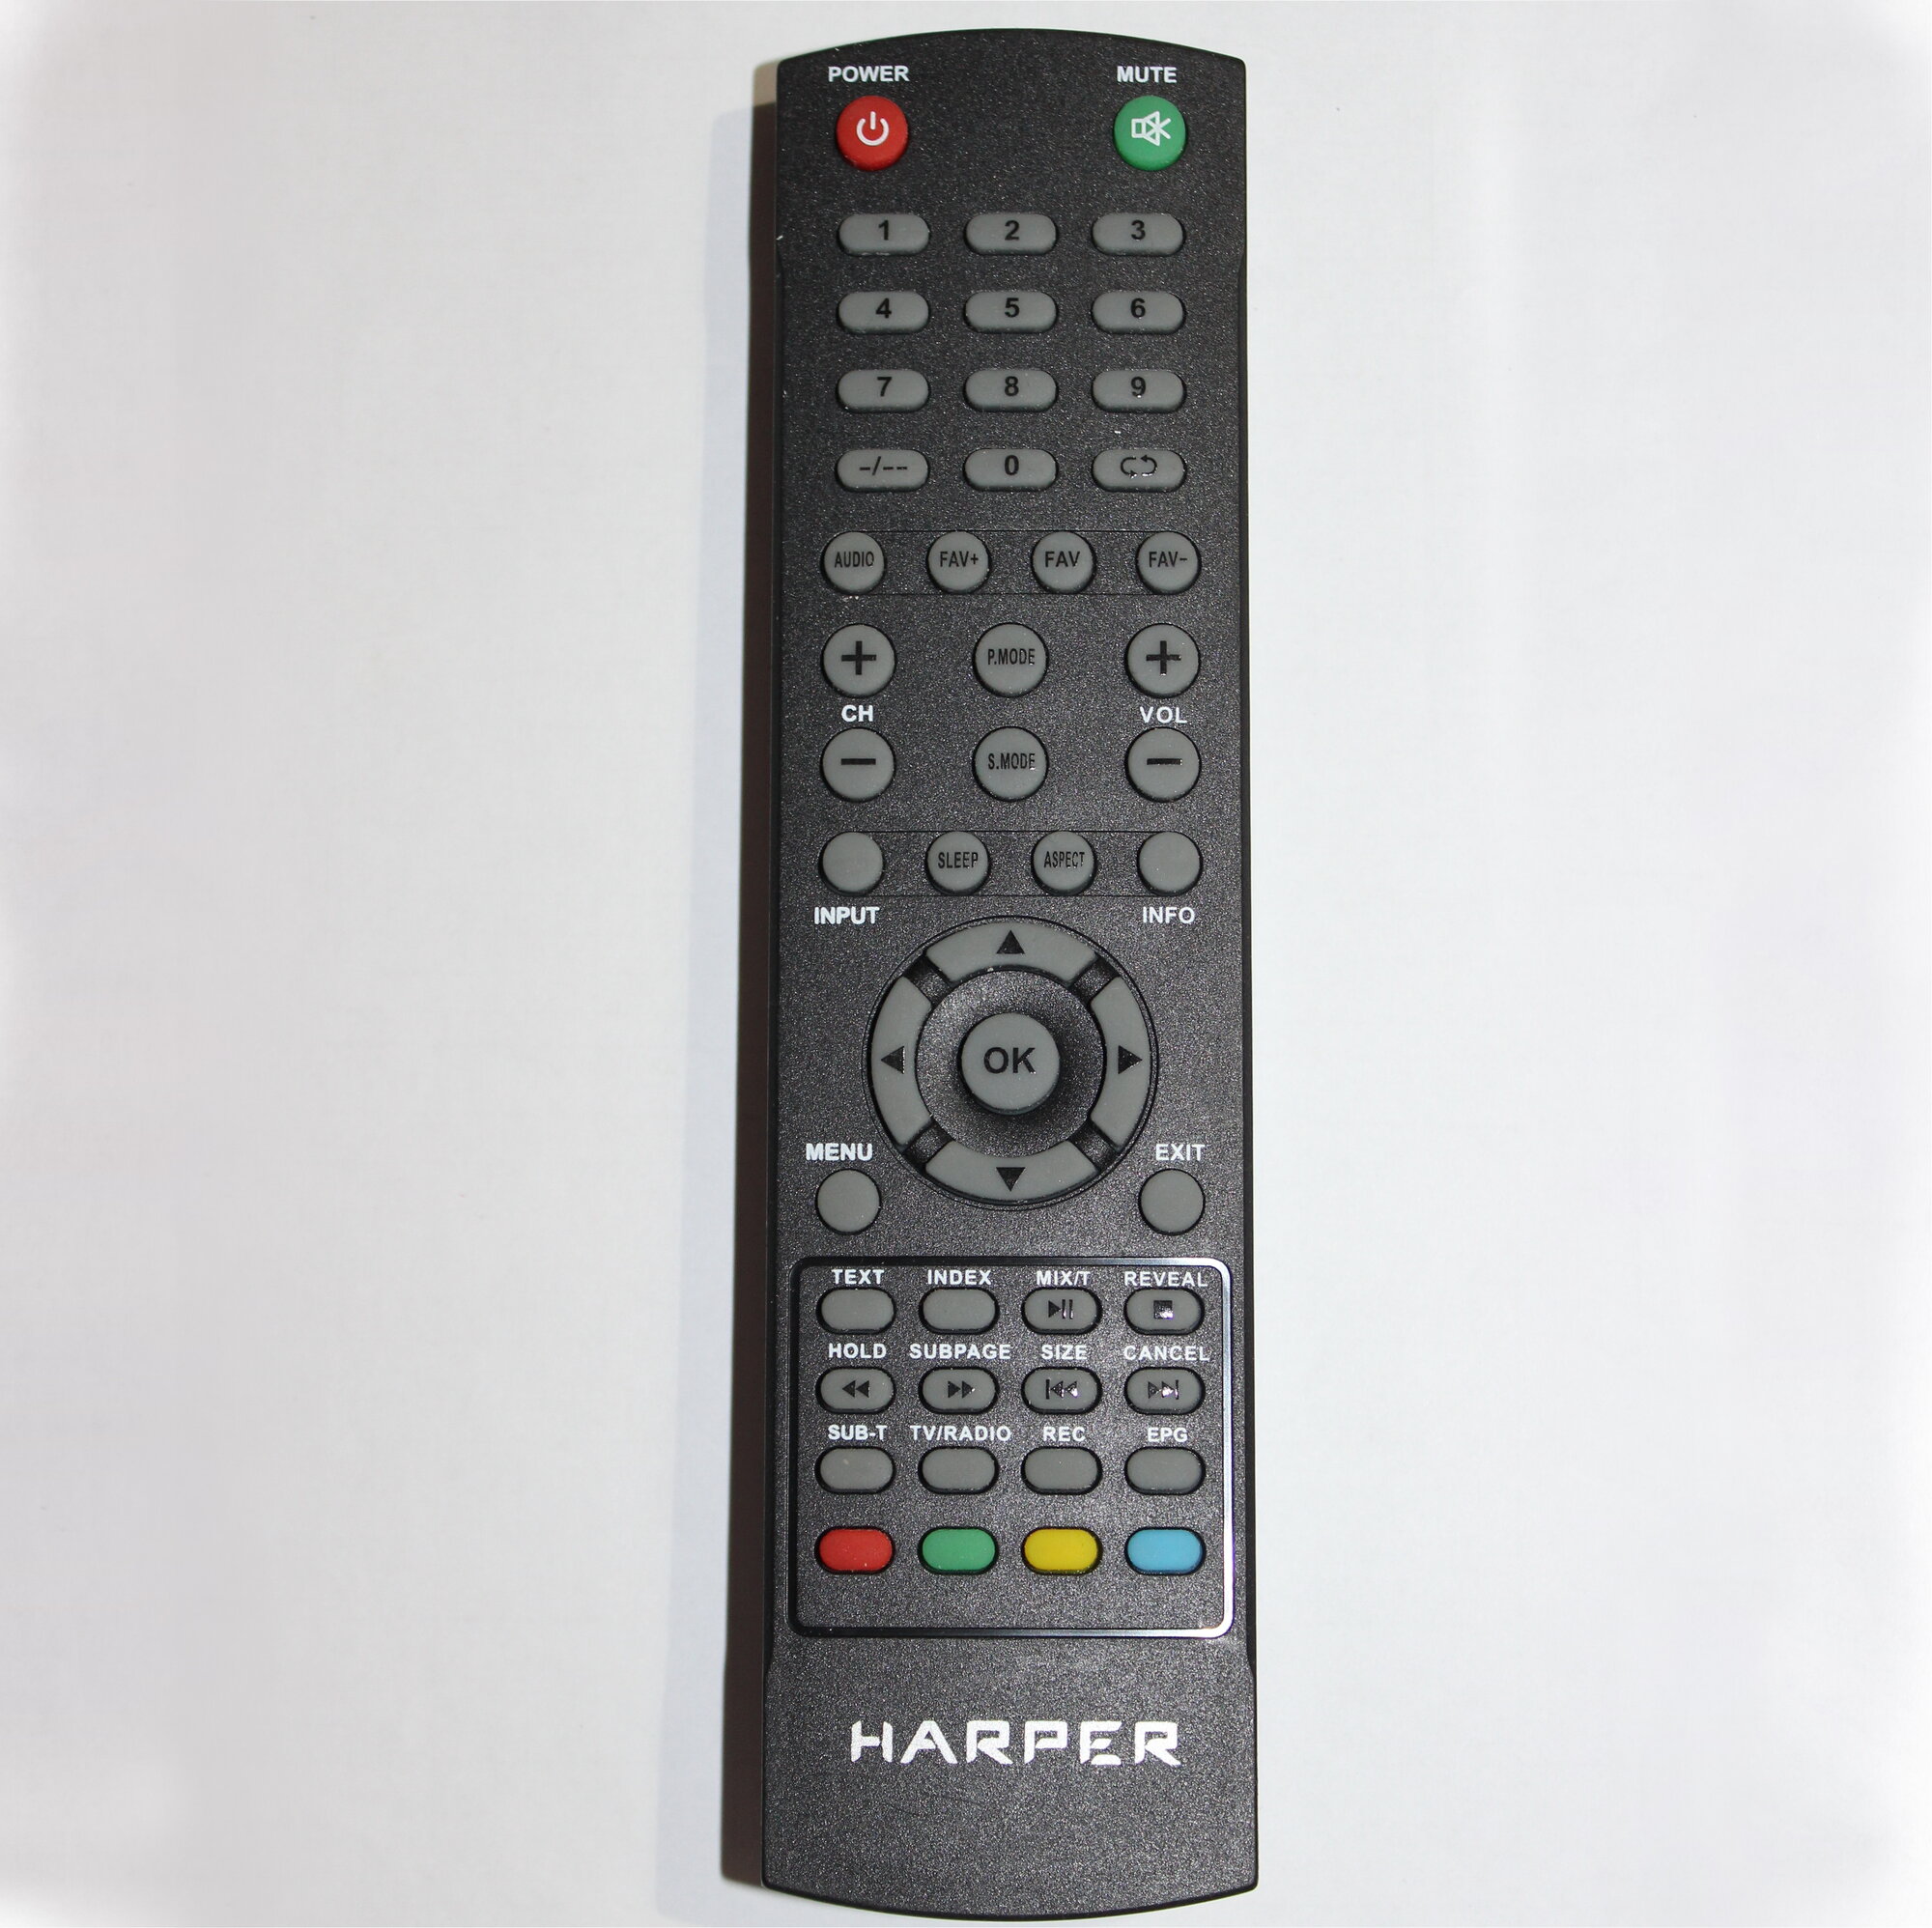 Пульт Harper 32R470T для телевизоров Harper 32R470T (32R490T). Батарейки в подарок!